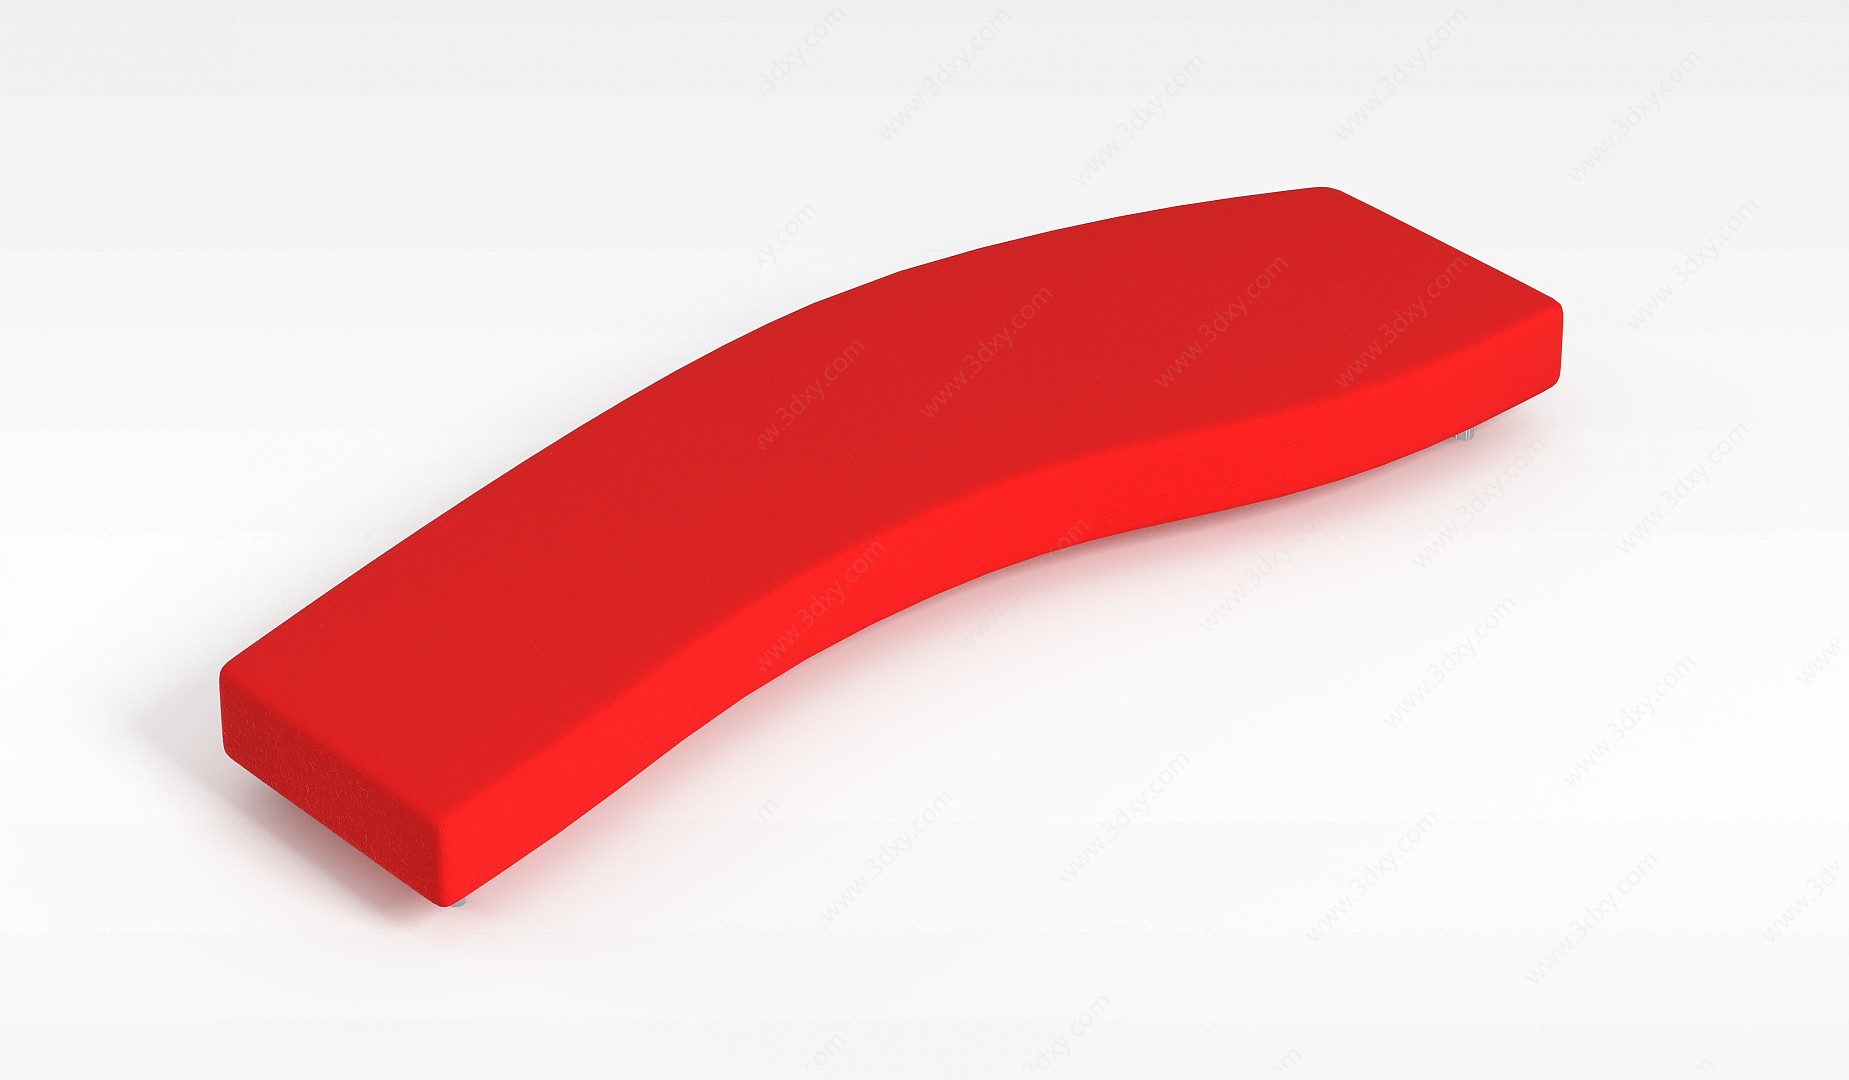 红色沙发凳3D模型